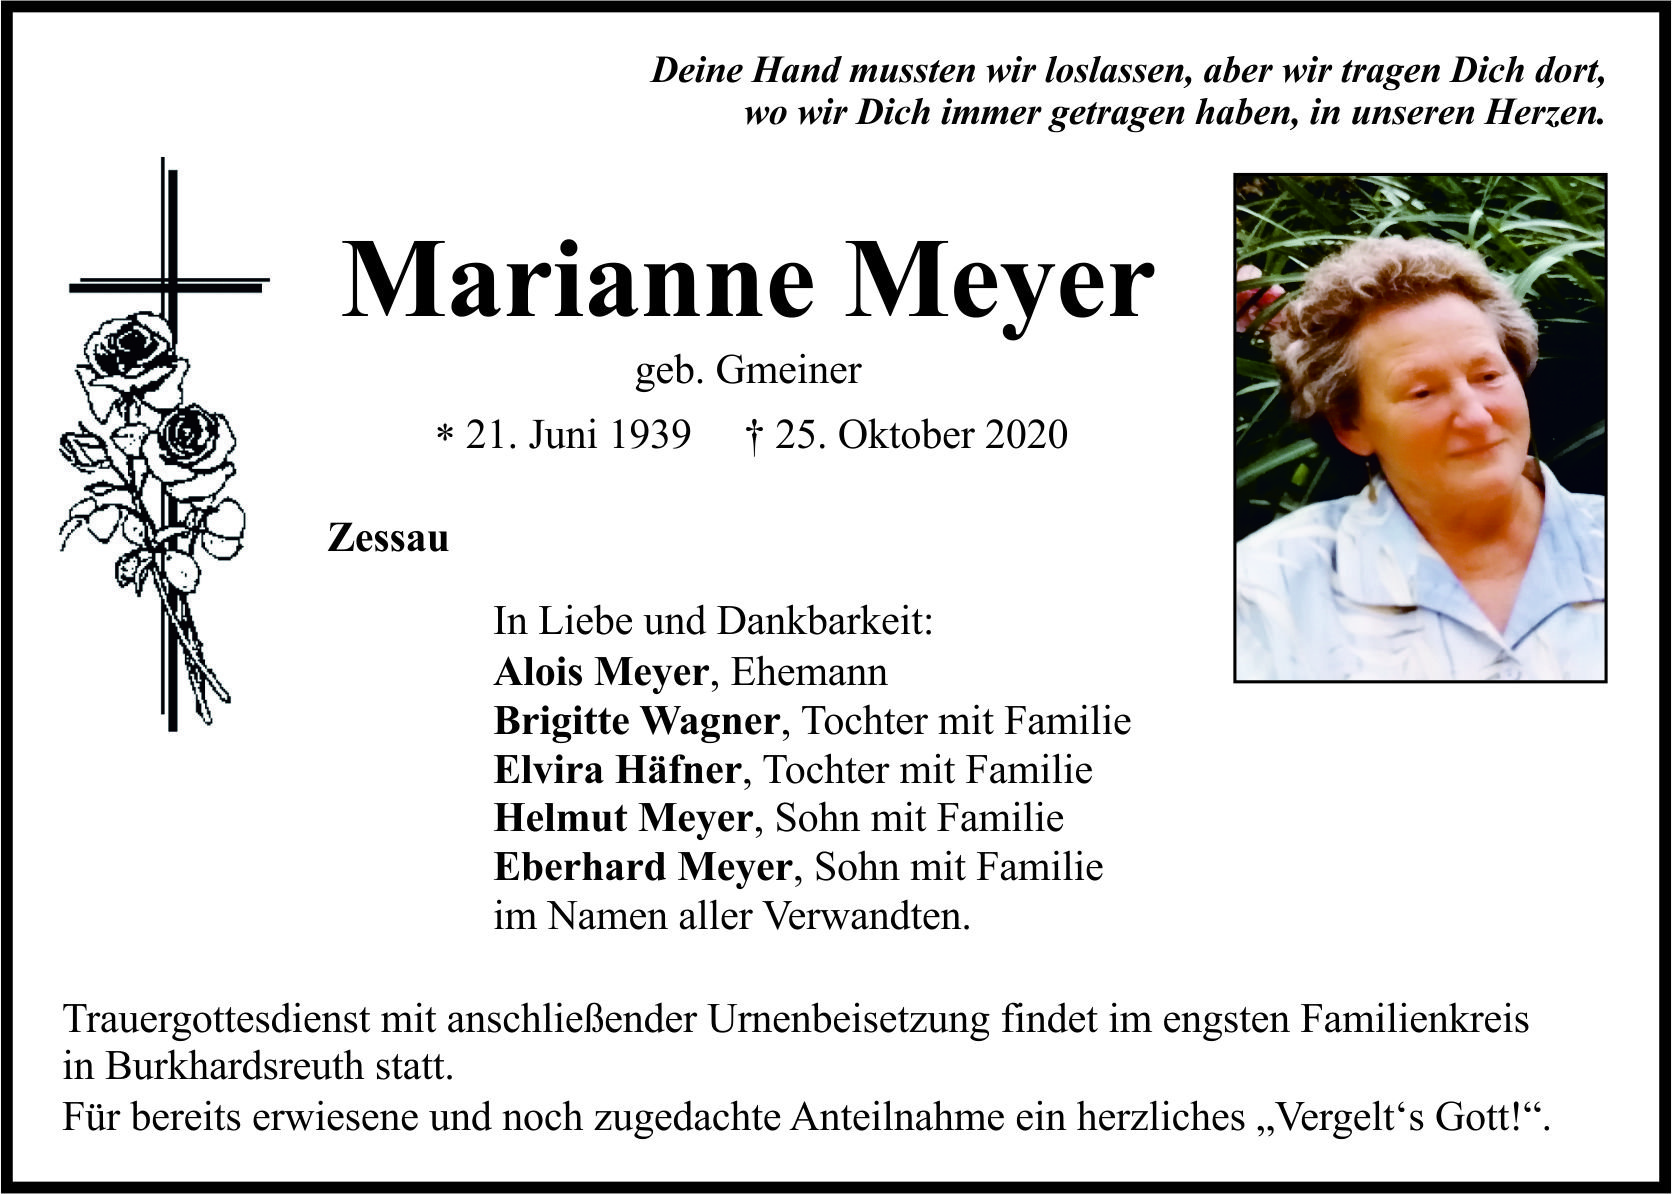 Traueranzeige Marianne Meyer, Zessau